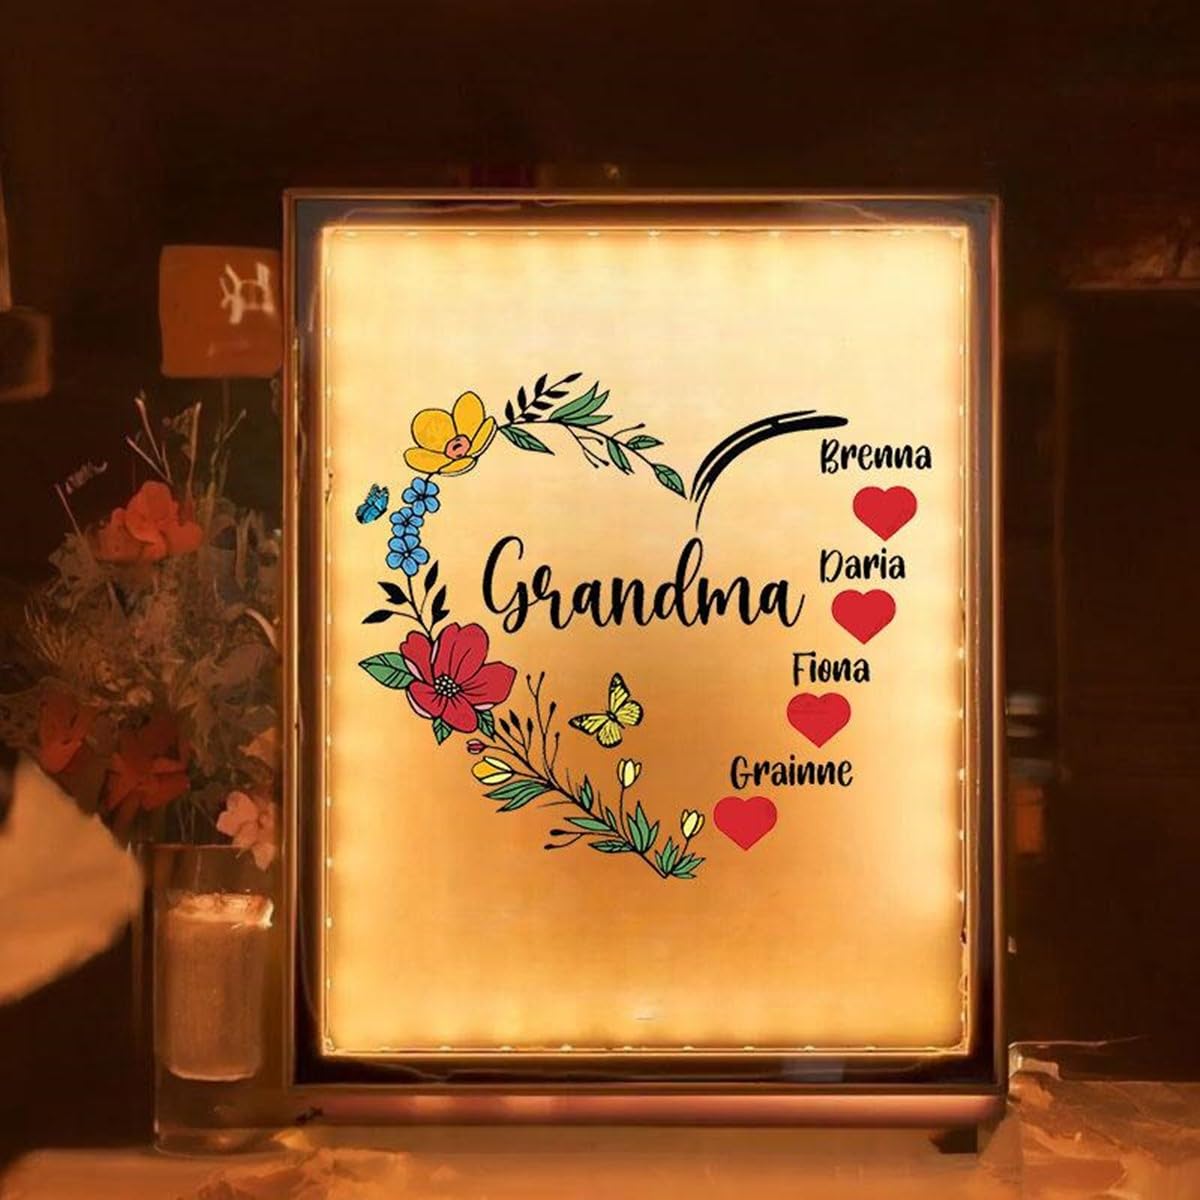 Specchio luminoso personalizzato per la festa della mamma Specchio luminoso per mamma Specchio personalizzato per luce notturna a cuore per nonna 